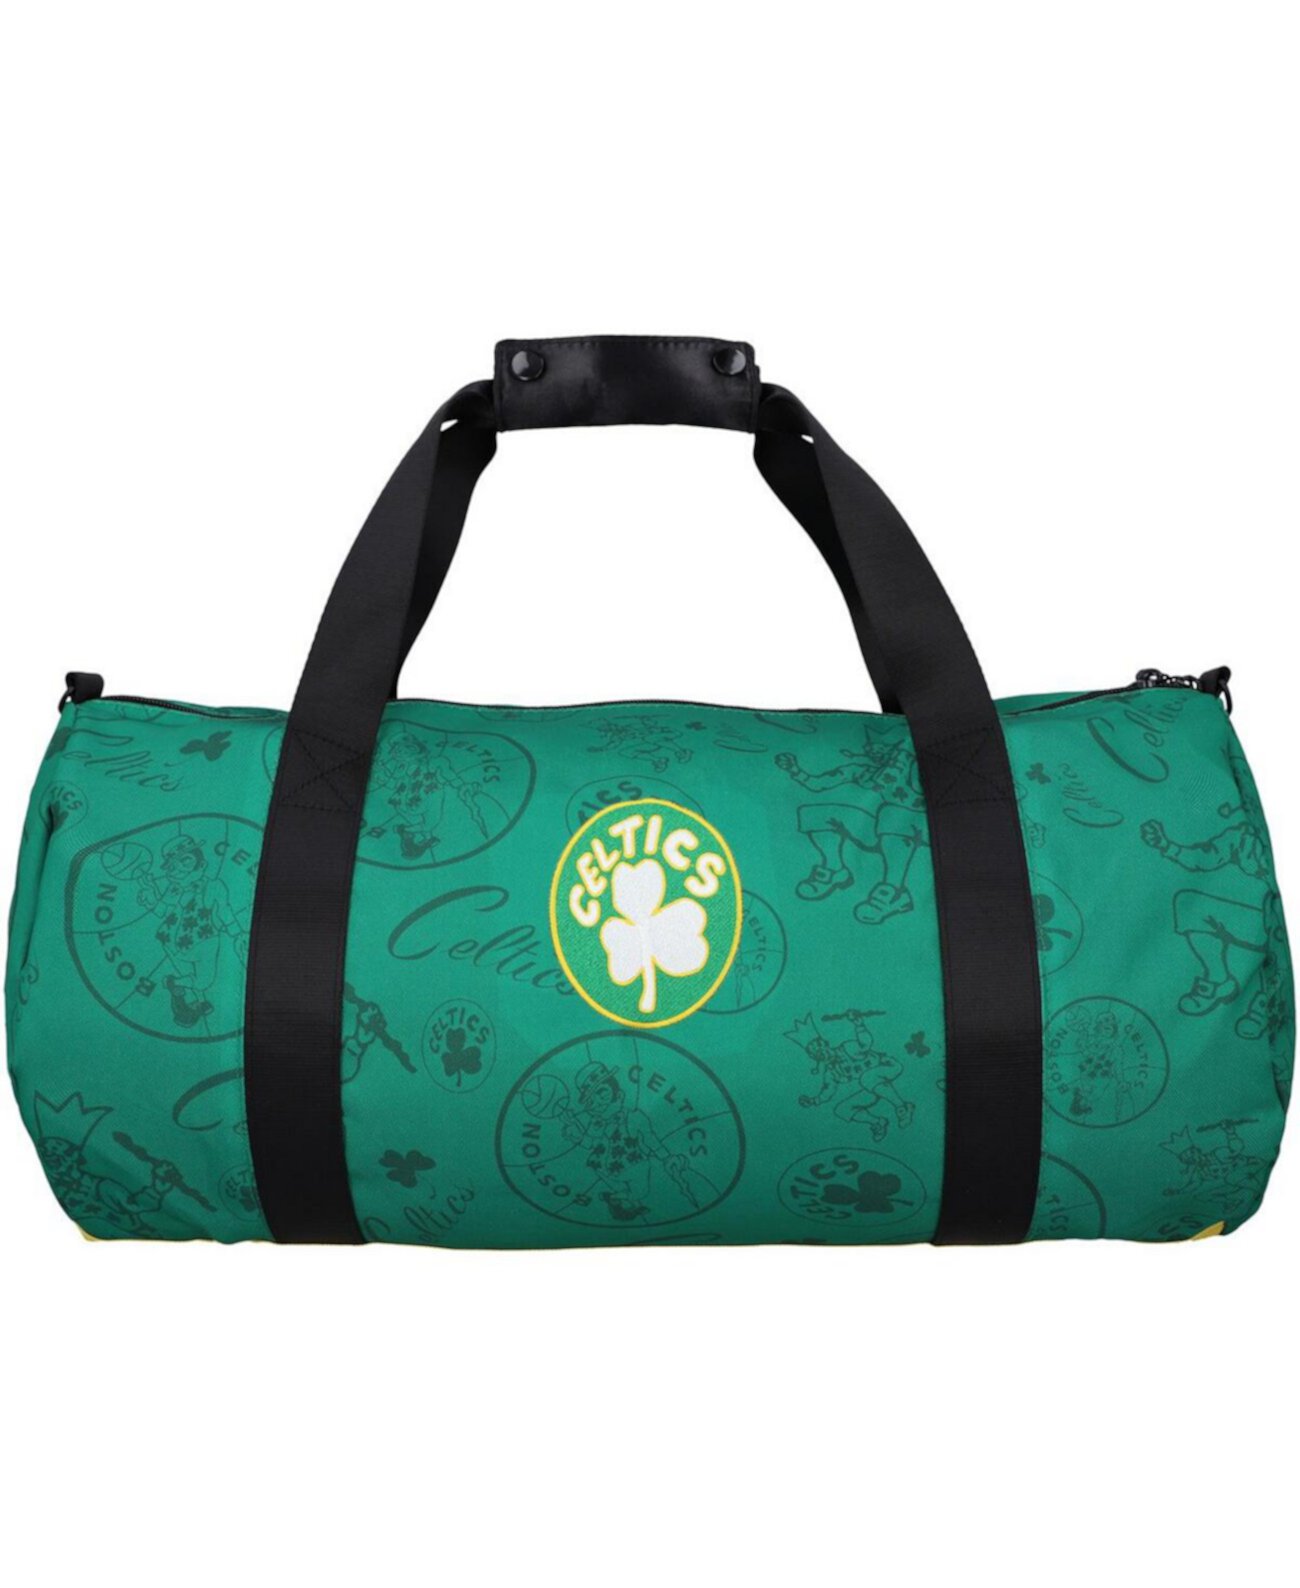 Мужская и женская спортивная сумка с логотипом команды Boston Celtics Team Mitchell & Ness